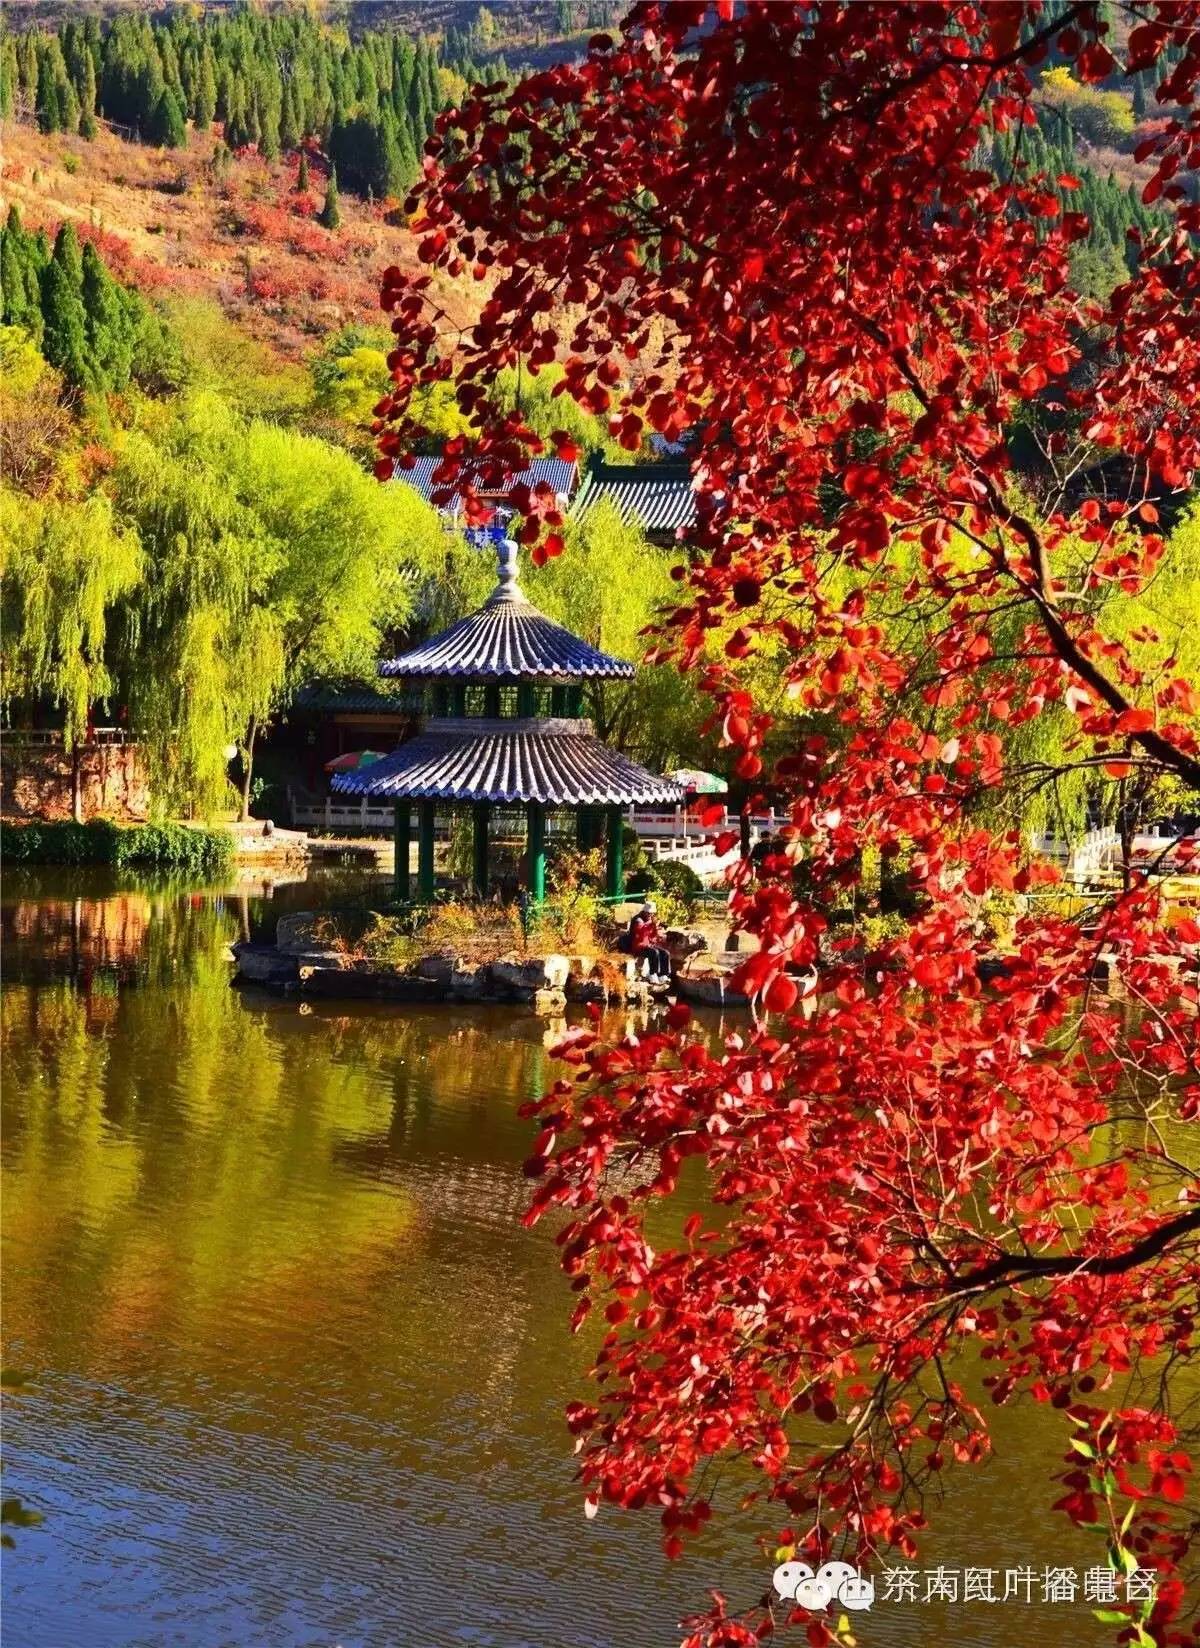 济南红叶谷景区邀你来红叶节赏漫山红叶!